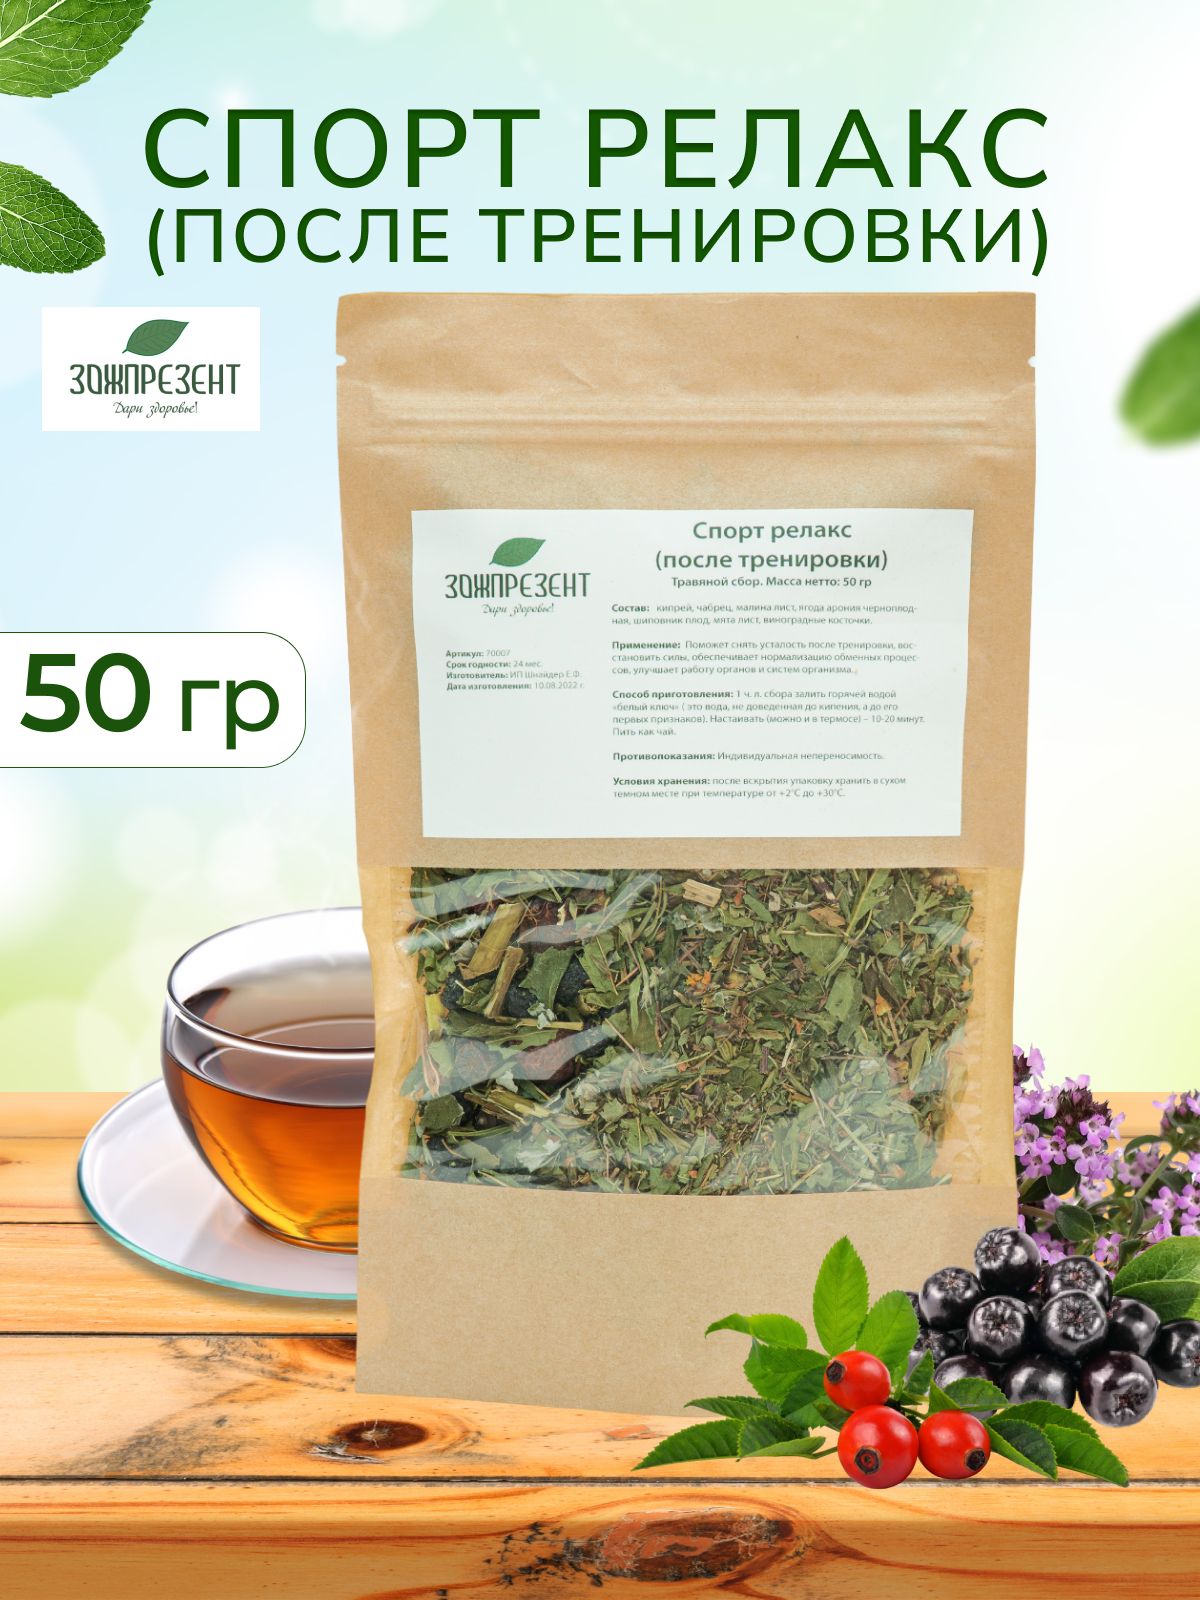 Травяные сборы Спорт релакс после тренировки Чай листовой — купить в интернет-магазине OZON с быстрой доставкой